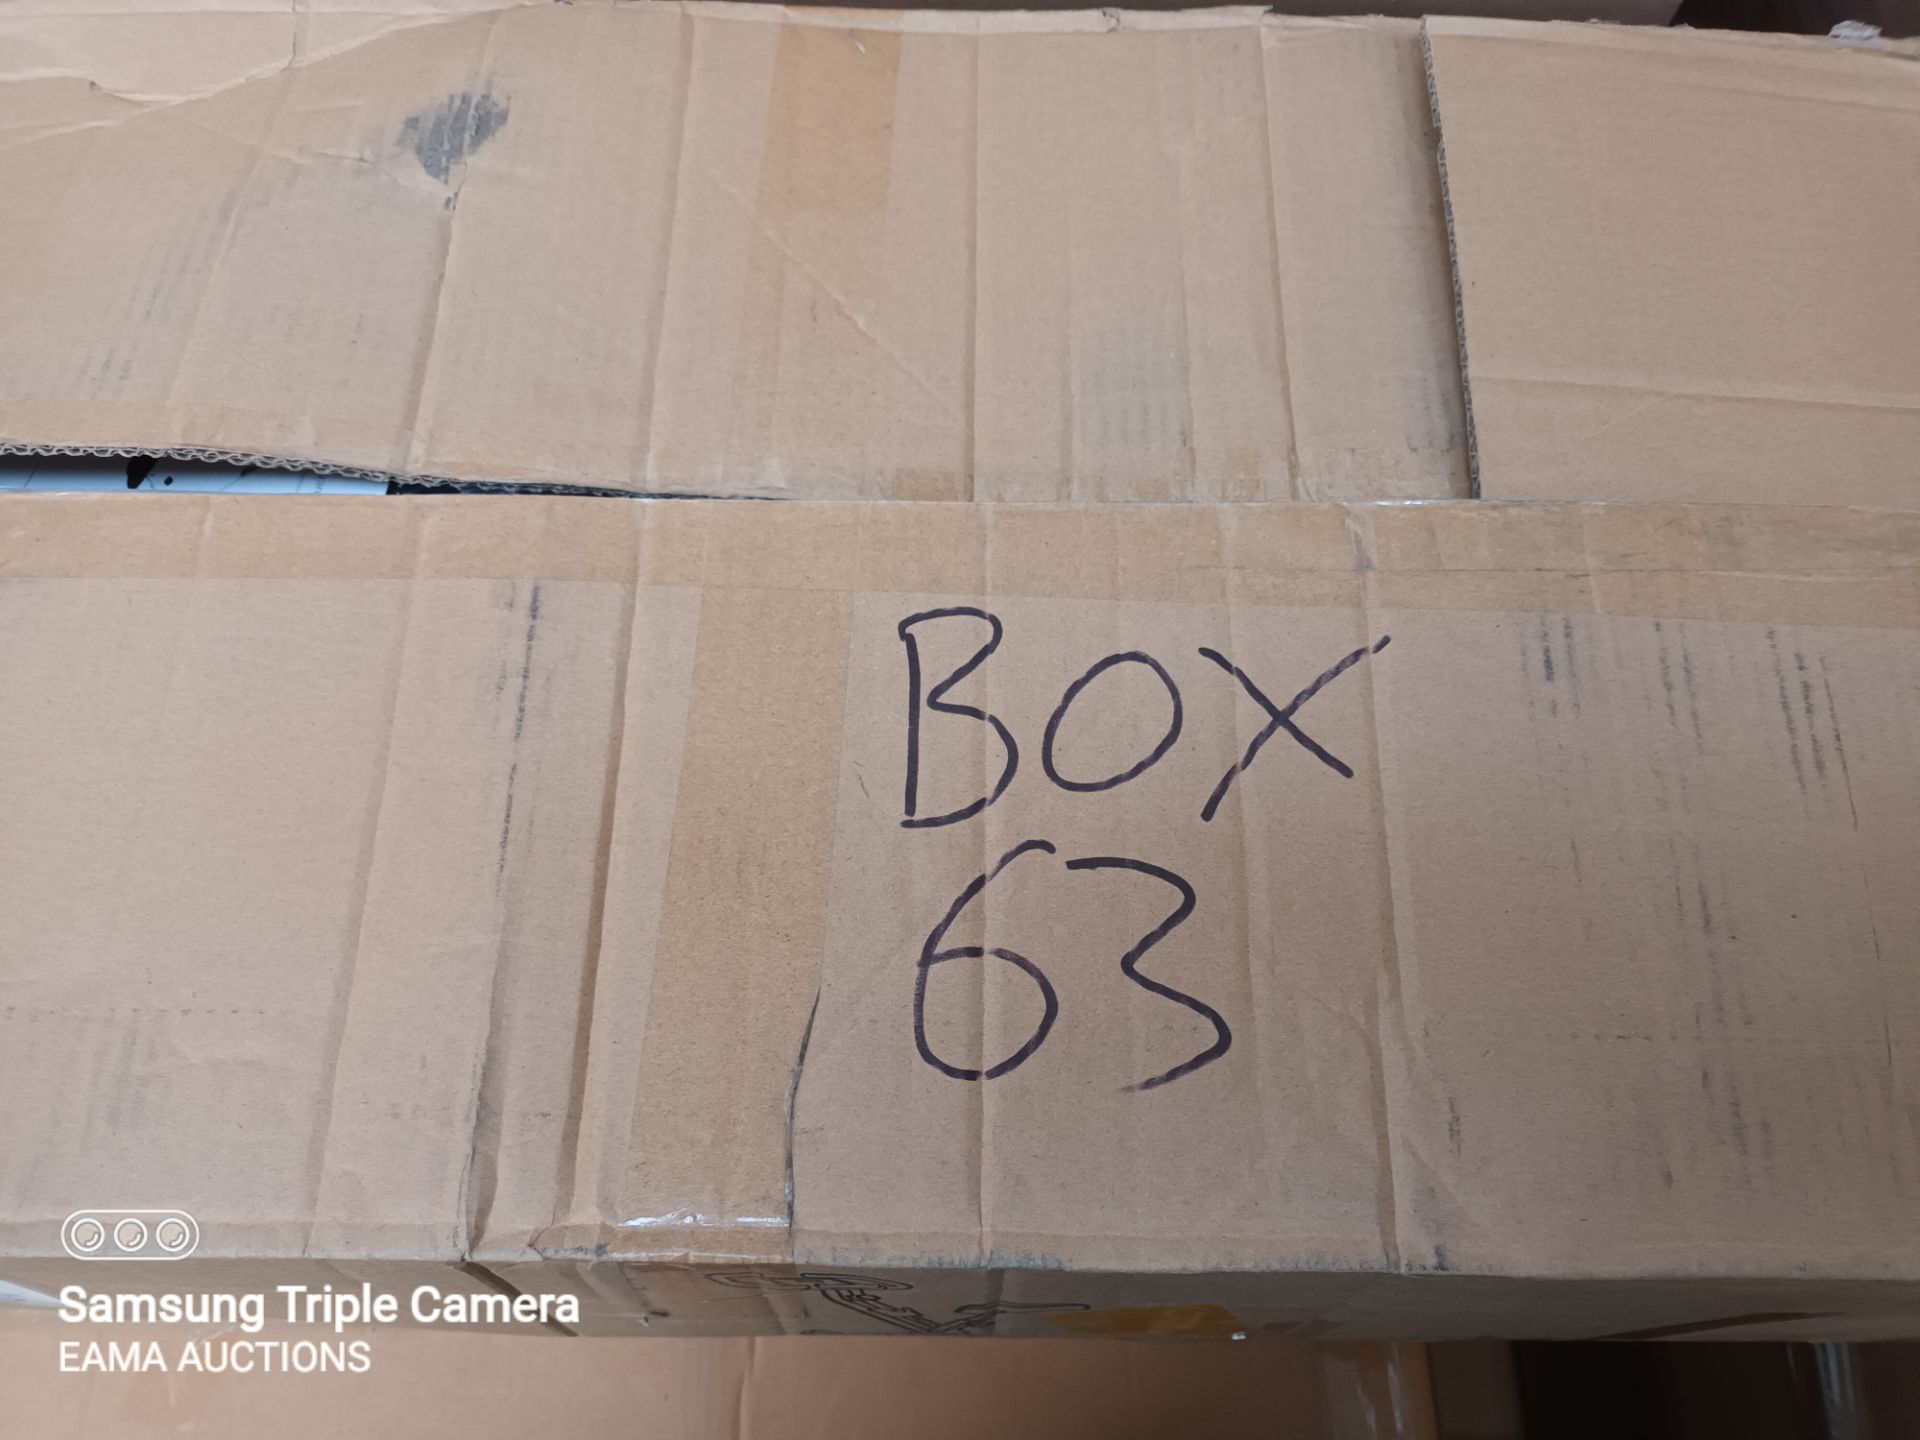 BOX 63 CONTAINING 1 EXERCISE BIKE - Image 3 of 3